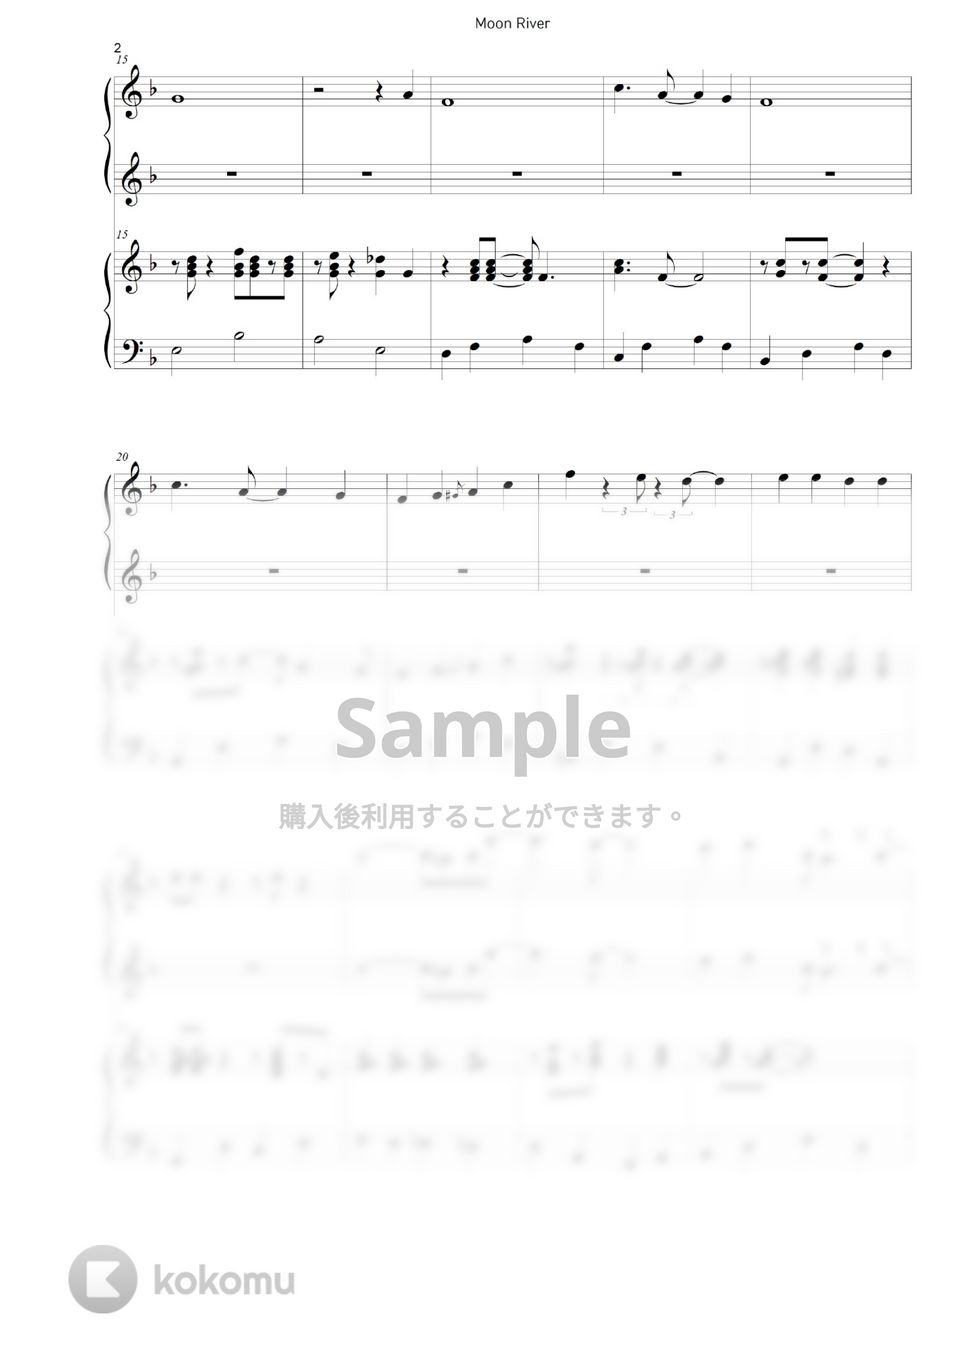 ティファニーで朝食を(Audrey Hepburn) - Moon River (ピアノ連弾 / Jazz ver.) by A-sam